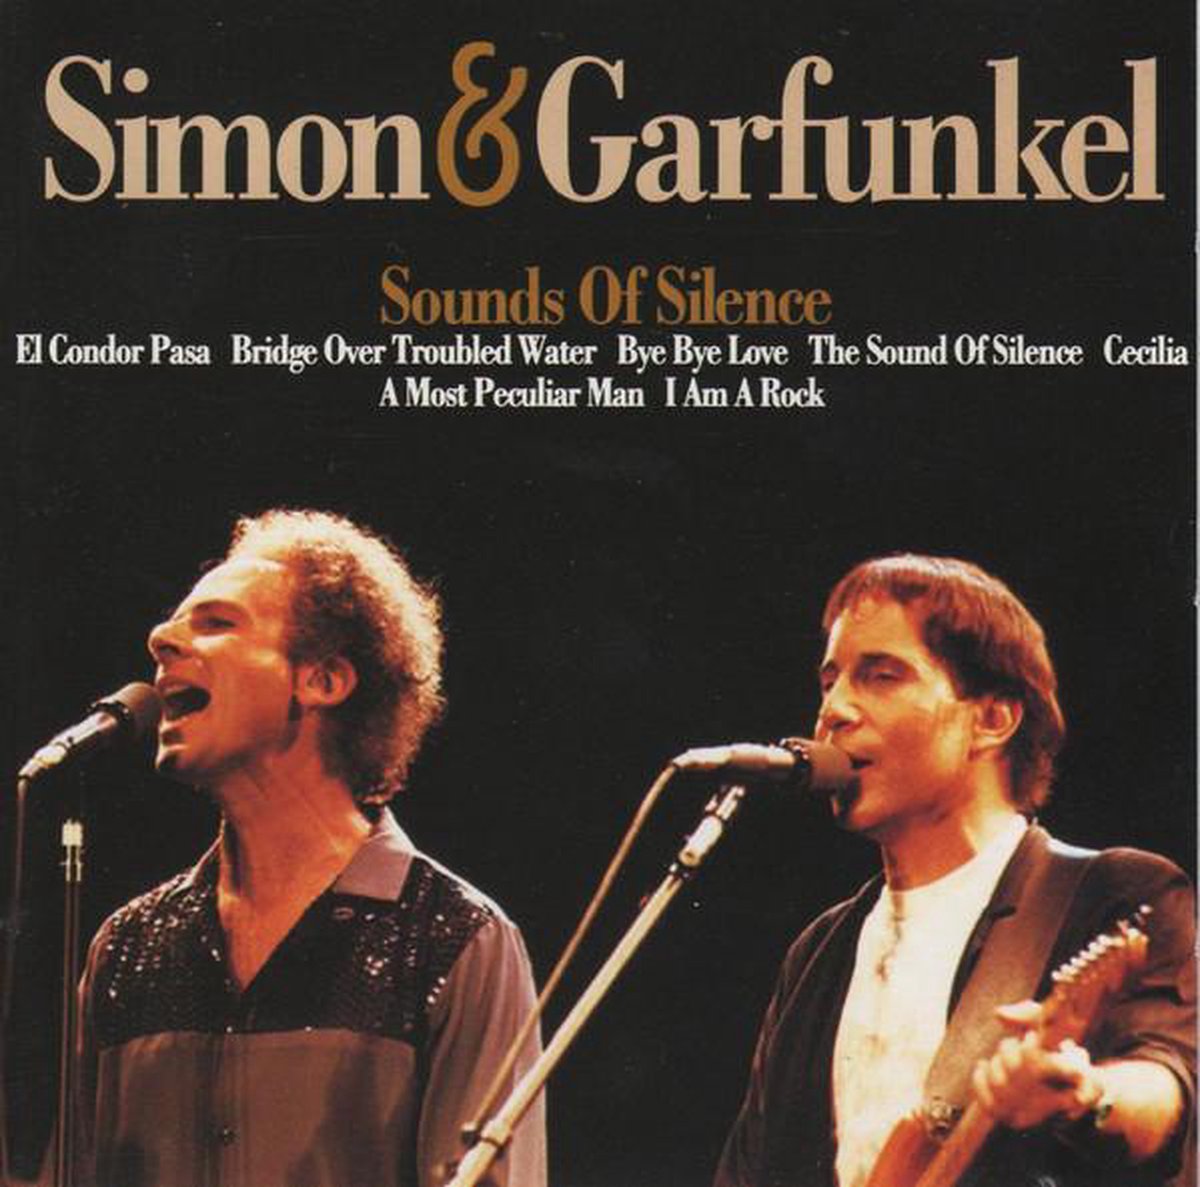 SIMON & GARFUNKEL - Sounds Of Silence - Simon & Garfunkel